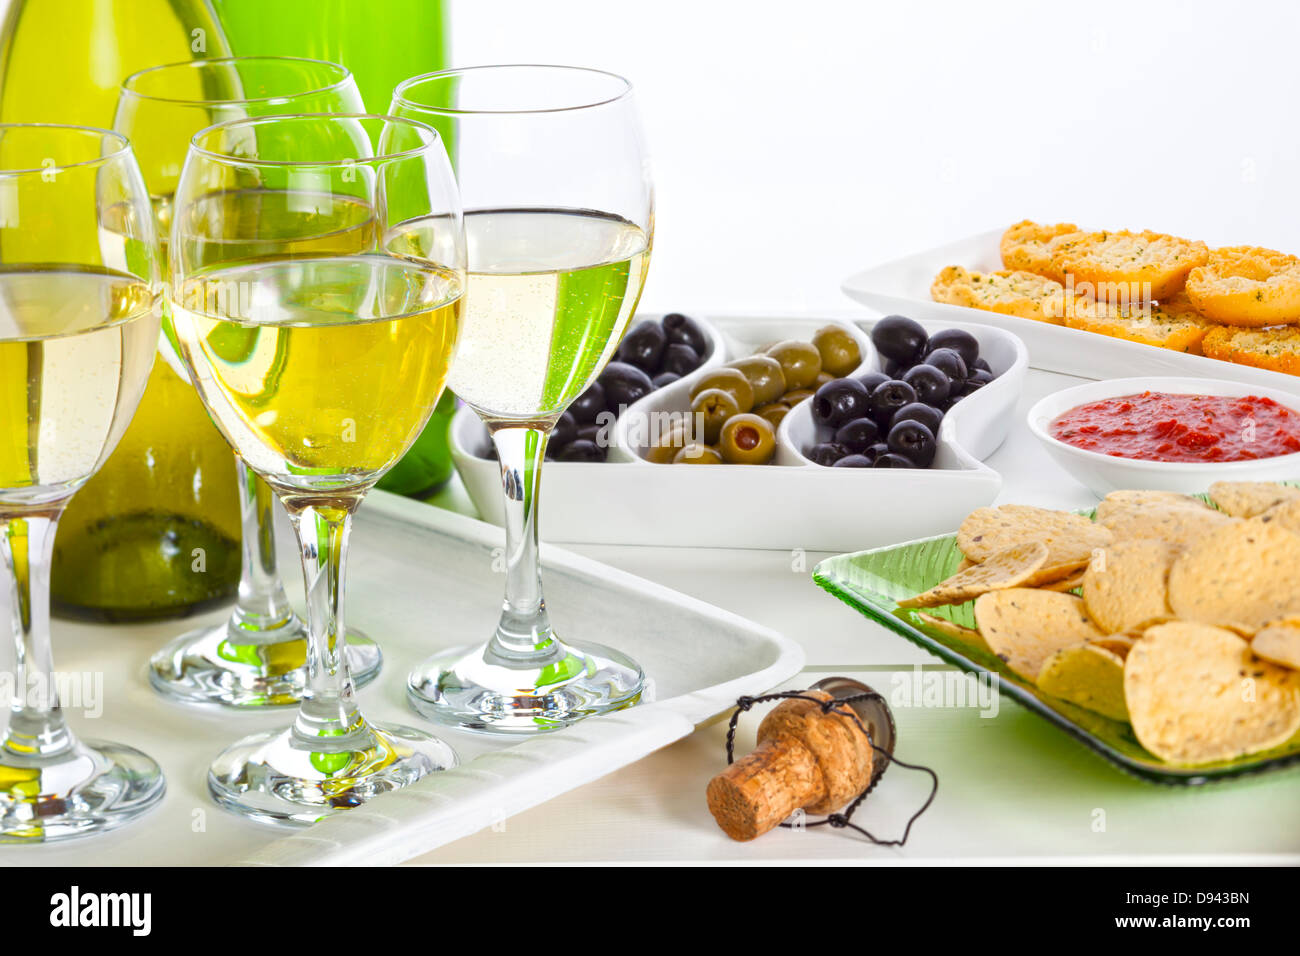 Essen und Wein auf einer Feier buffet Tisch, Textfreiraum. Stockfoto